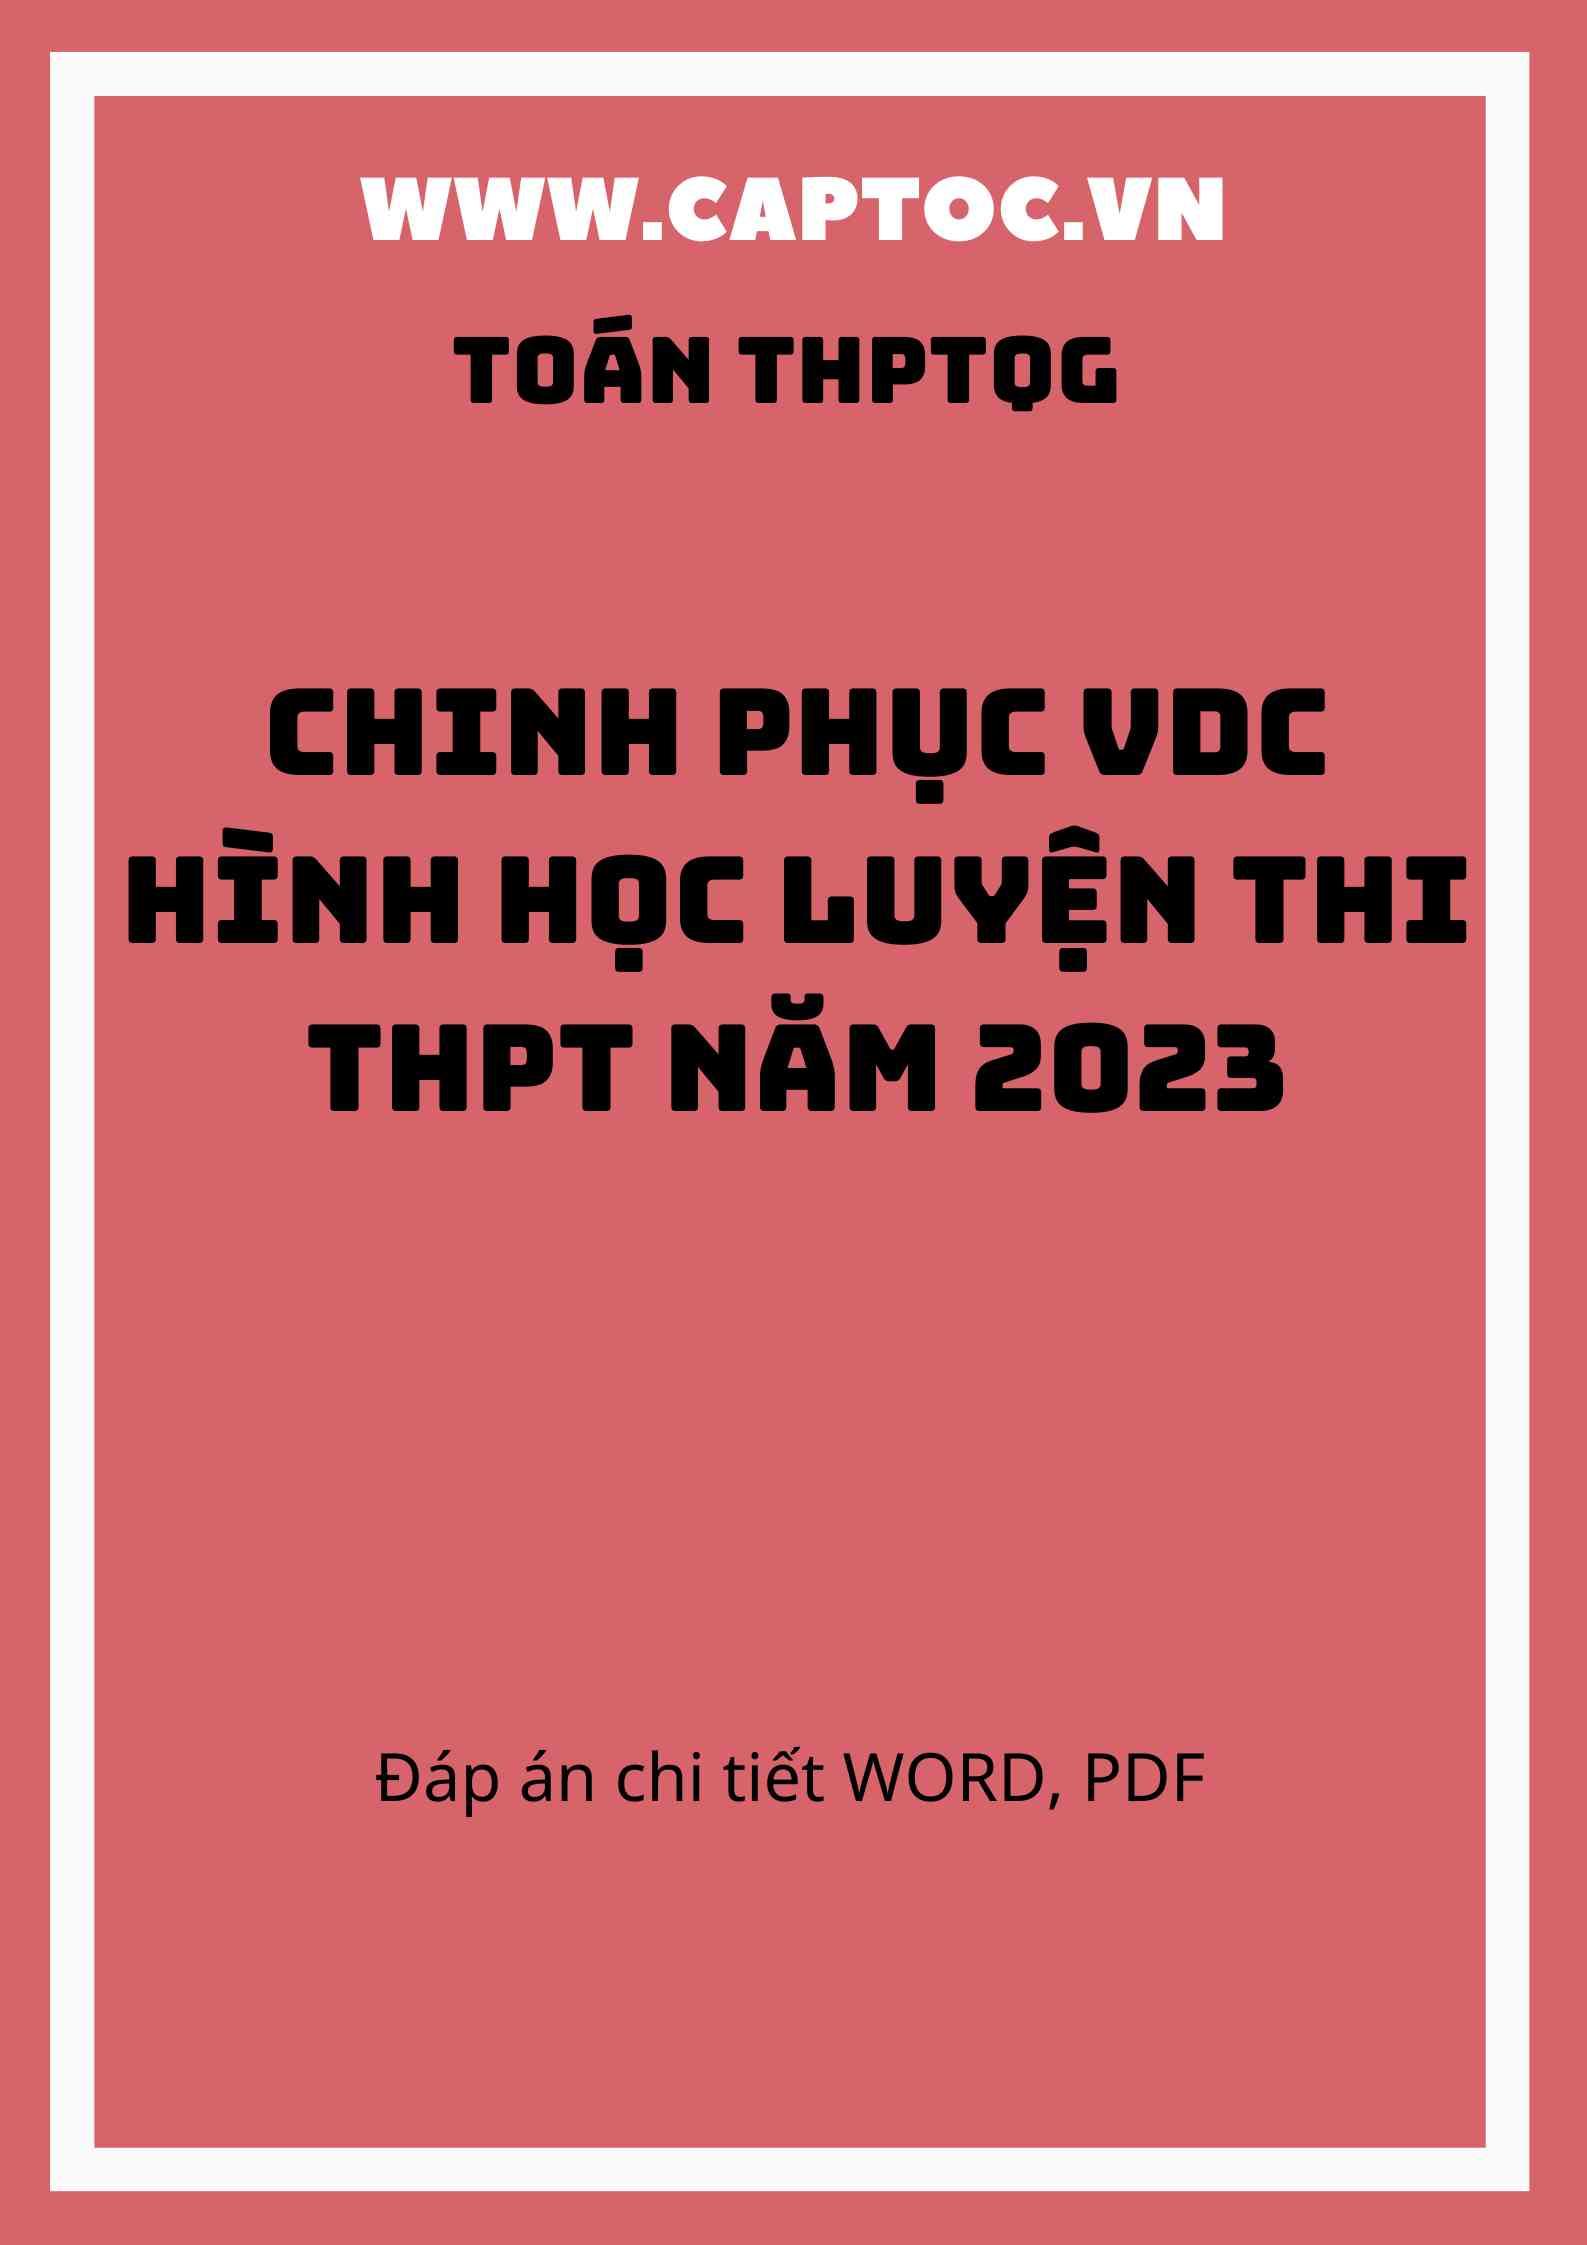 Chinh phục VDC Hình học luyện thi THPT năm 2023